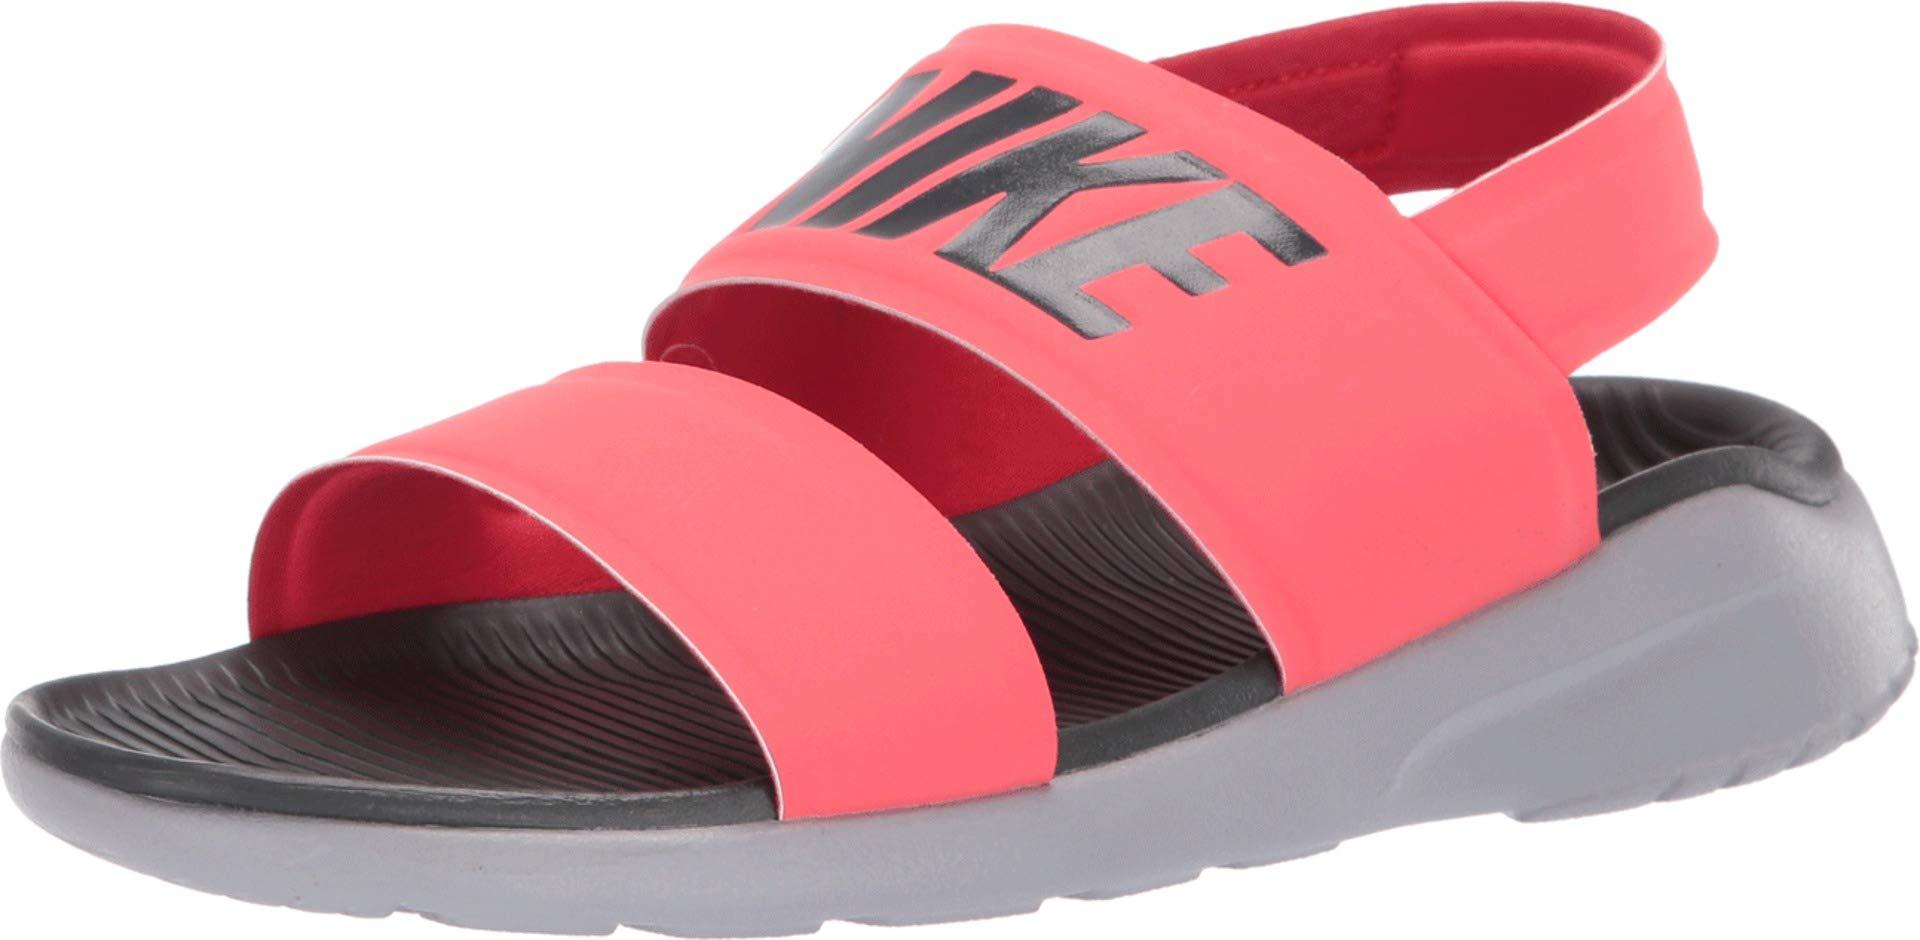 Nike Tanjun Sandal in Pink - Lyst